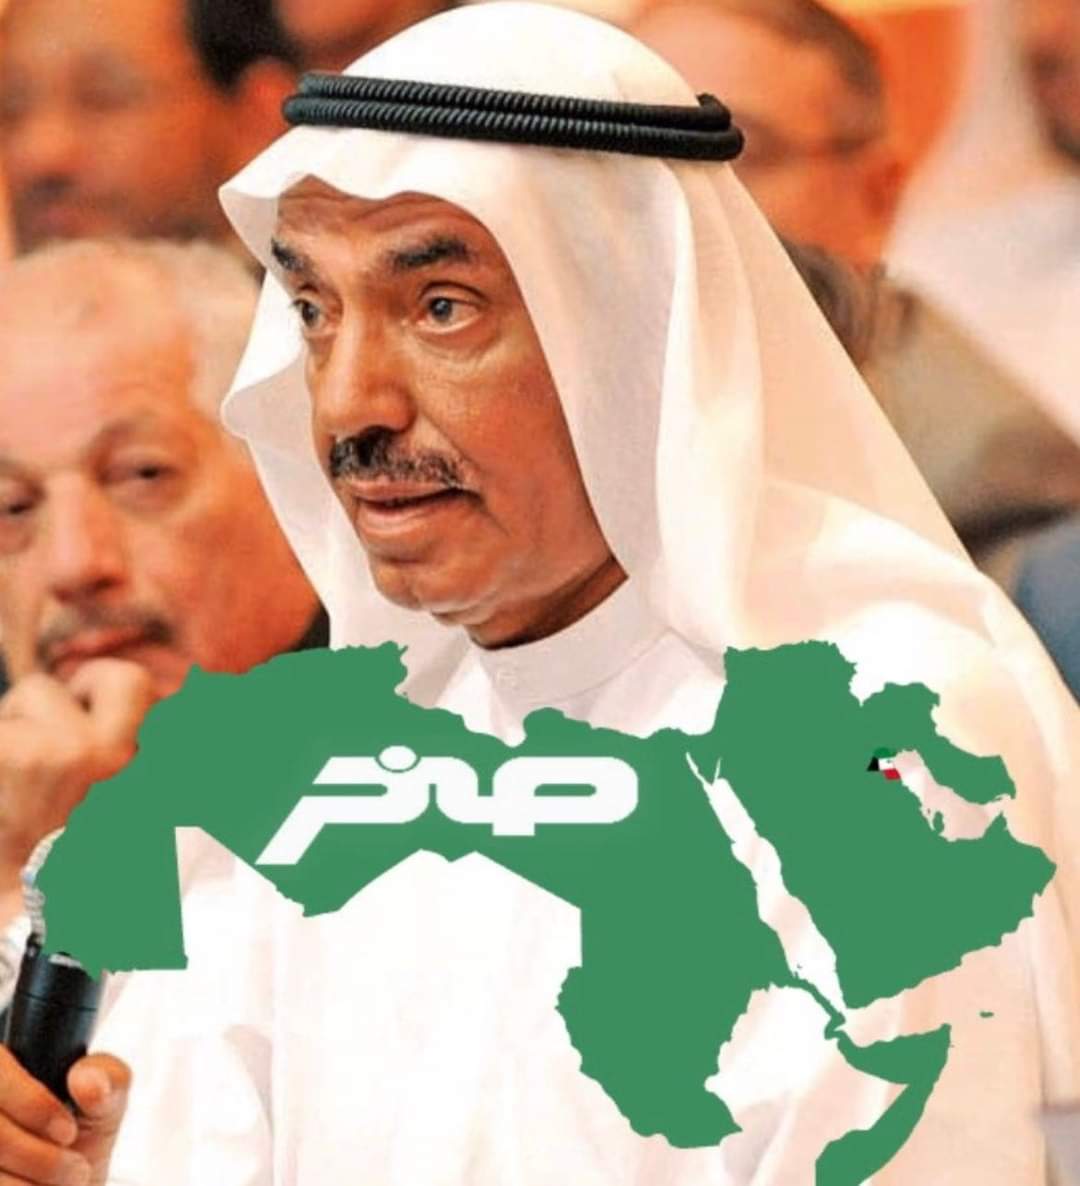 وفاة رجل الأعمال الكويتي محمد الشارخ صاحب أول كمبيوتر باللغة العربية صخر